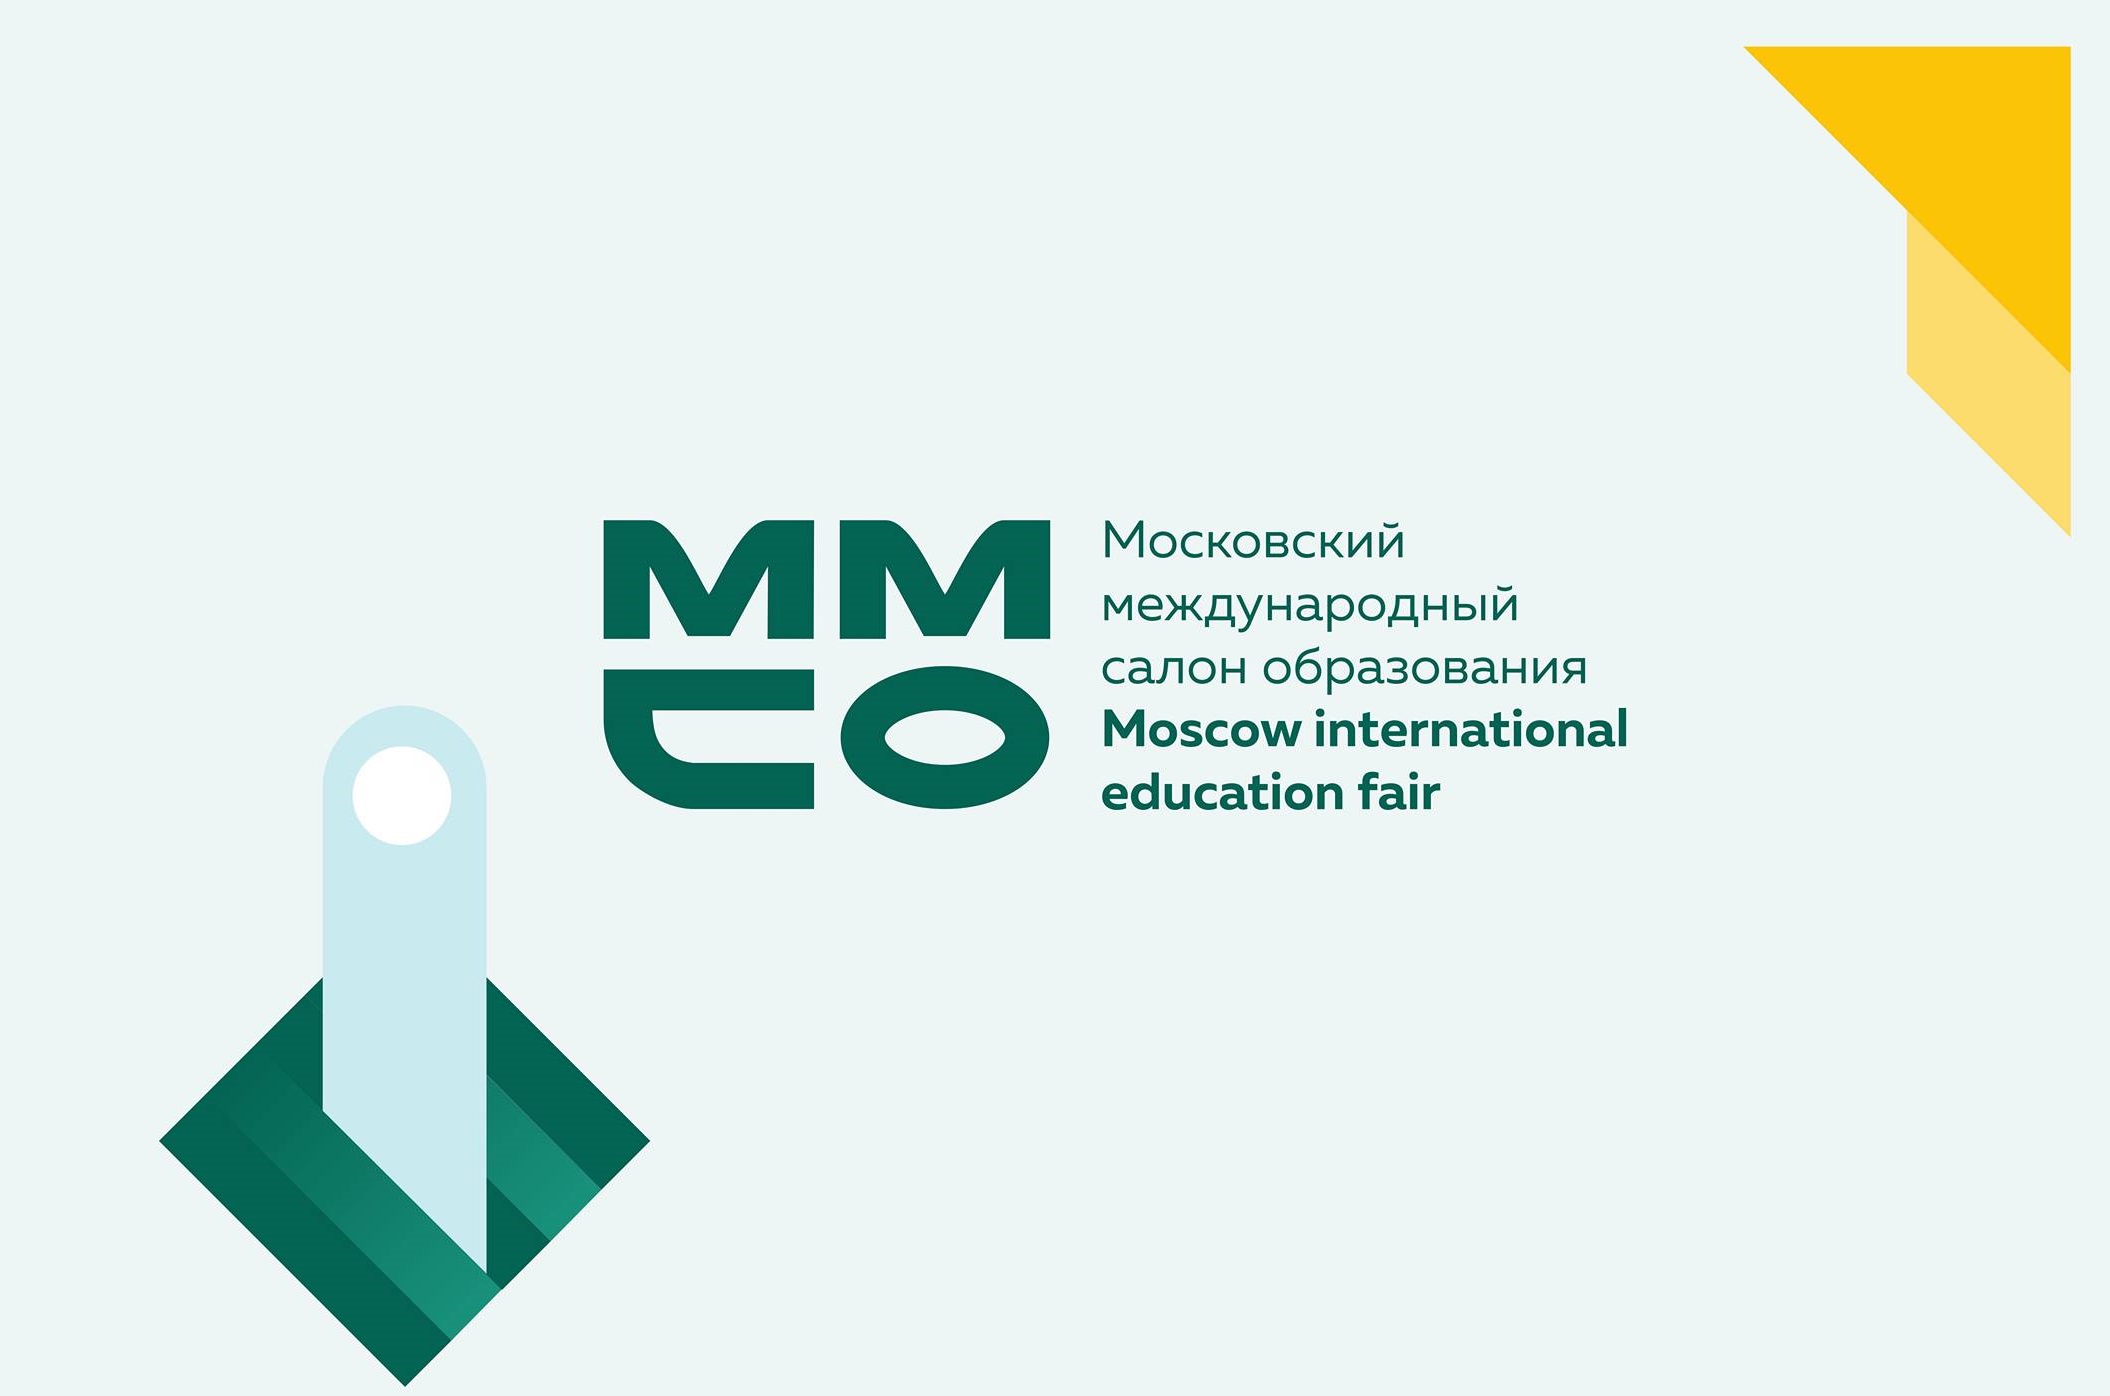 Московский международный салон образования пройдет с 6 по 8 октября 